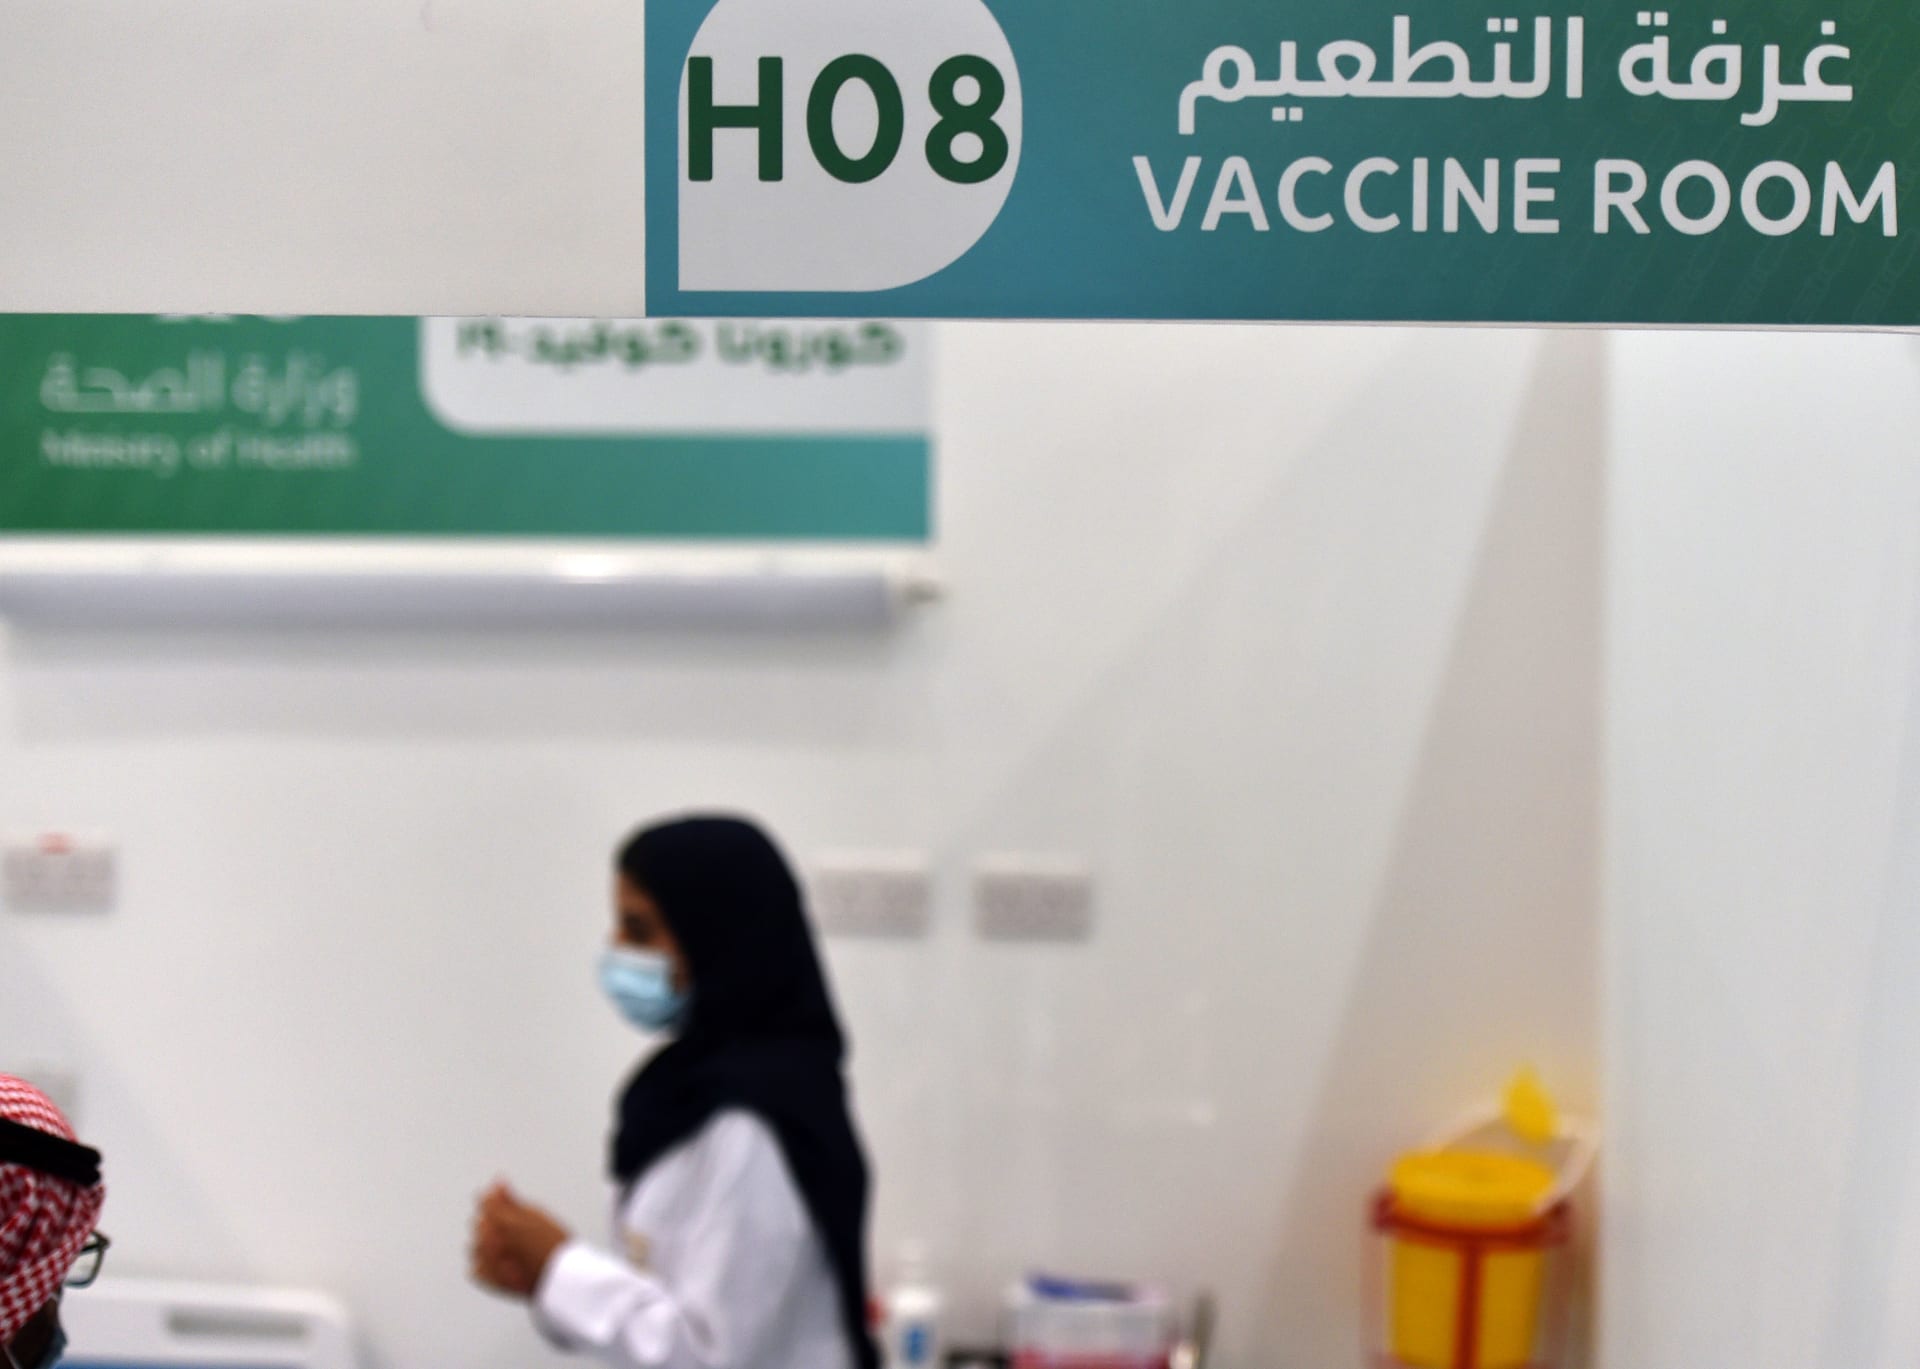 17 ديسمبر 2020 - مشهد لمكان إعطاء لقاح فيروس كورونا كجزء من حملة التطعيم لوزارة الصحة السعودية في العاصمة الرياض.